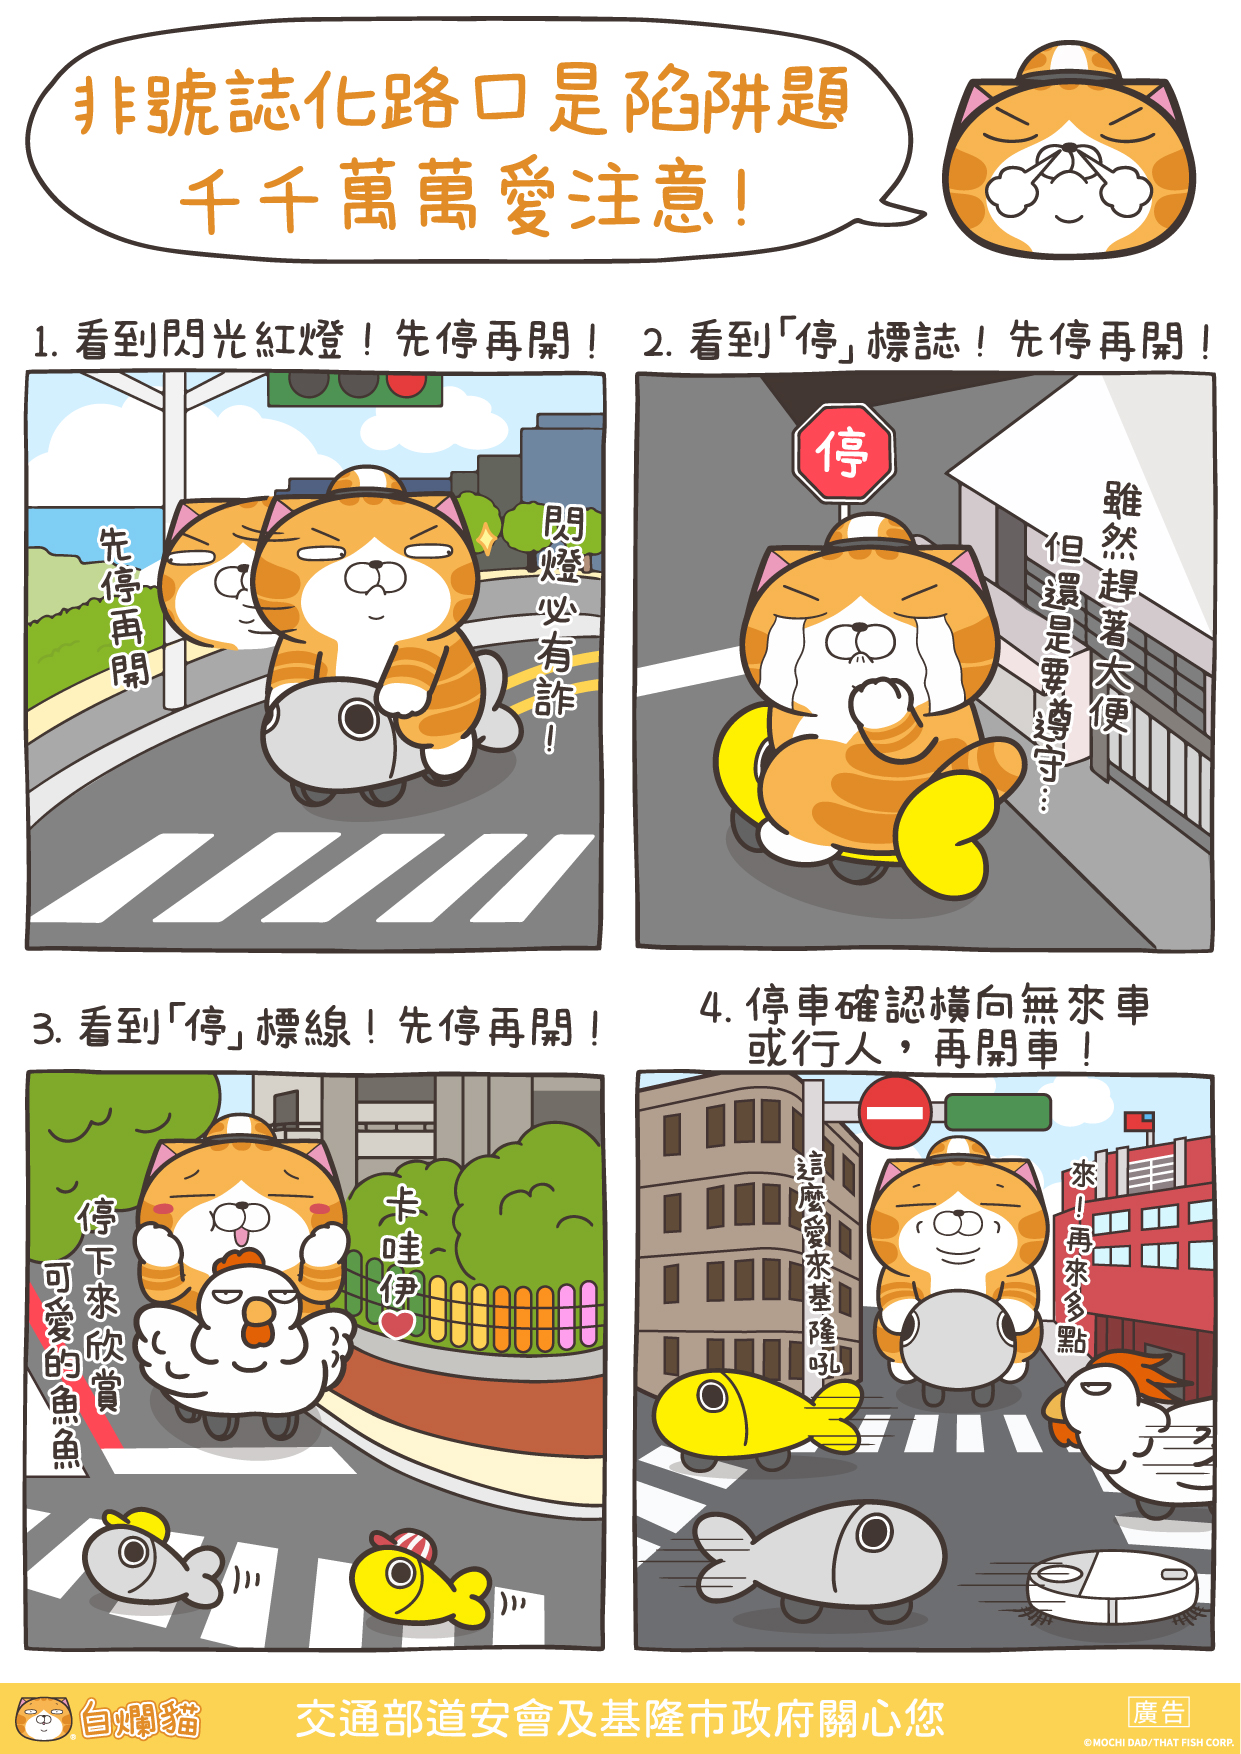 基隆市政府邀請知名插畫家「白爛貓」進行交安宣導 (3)